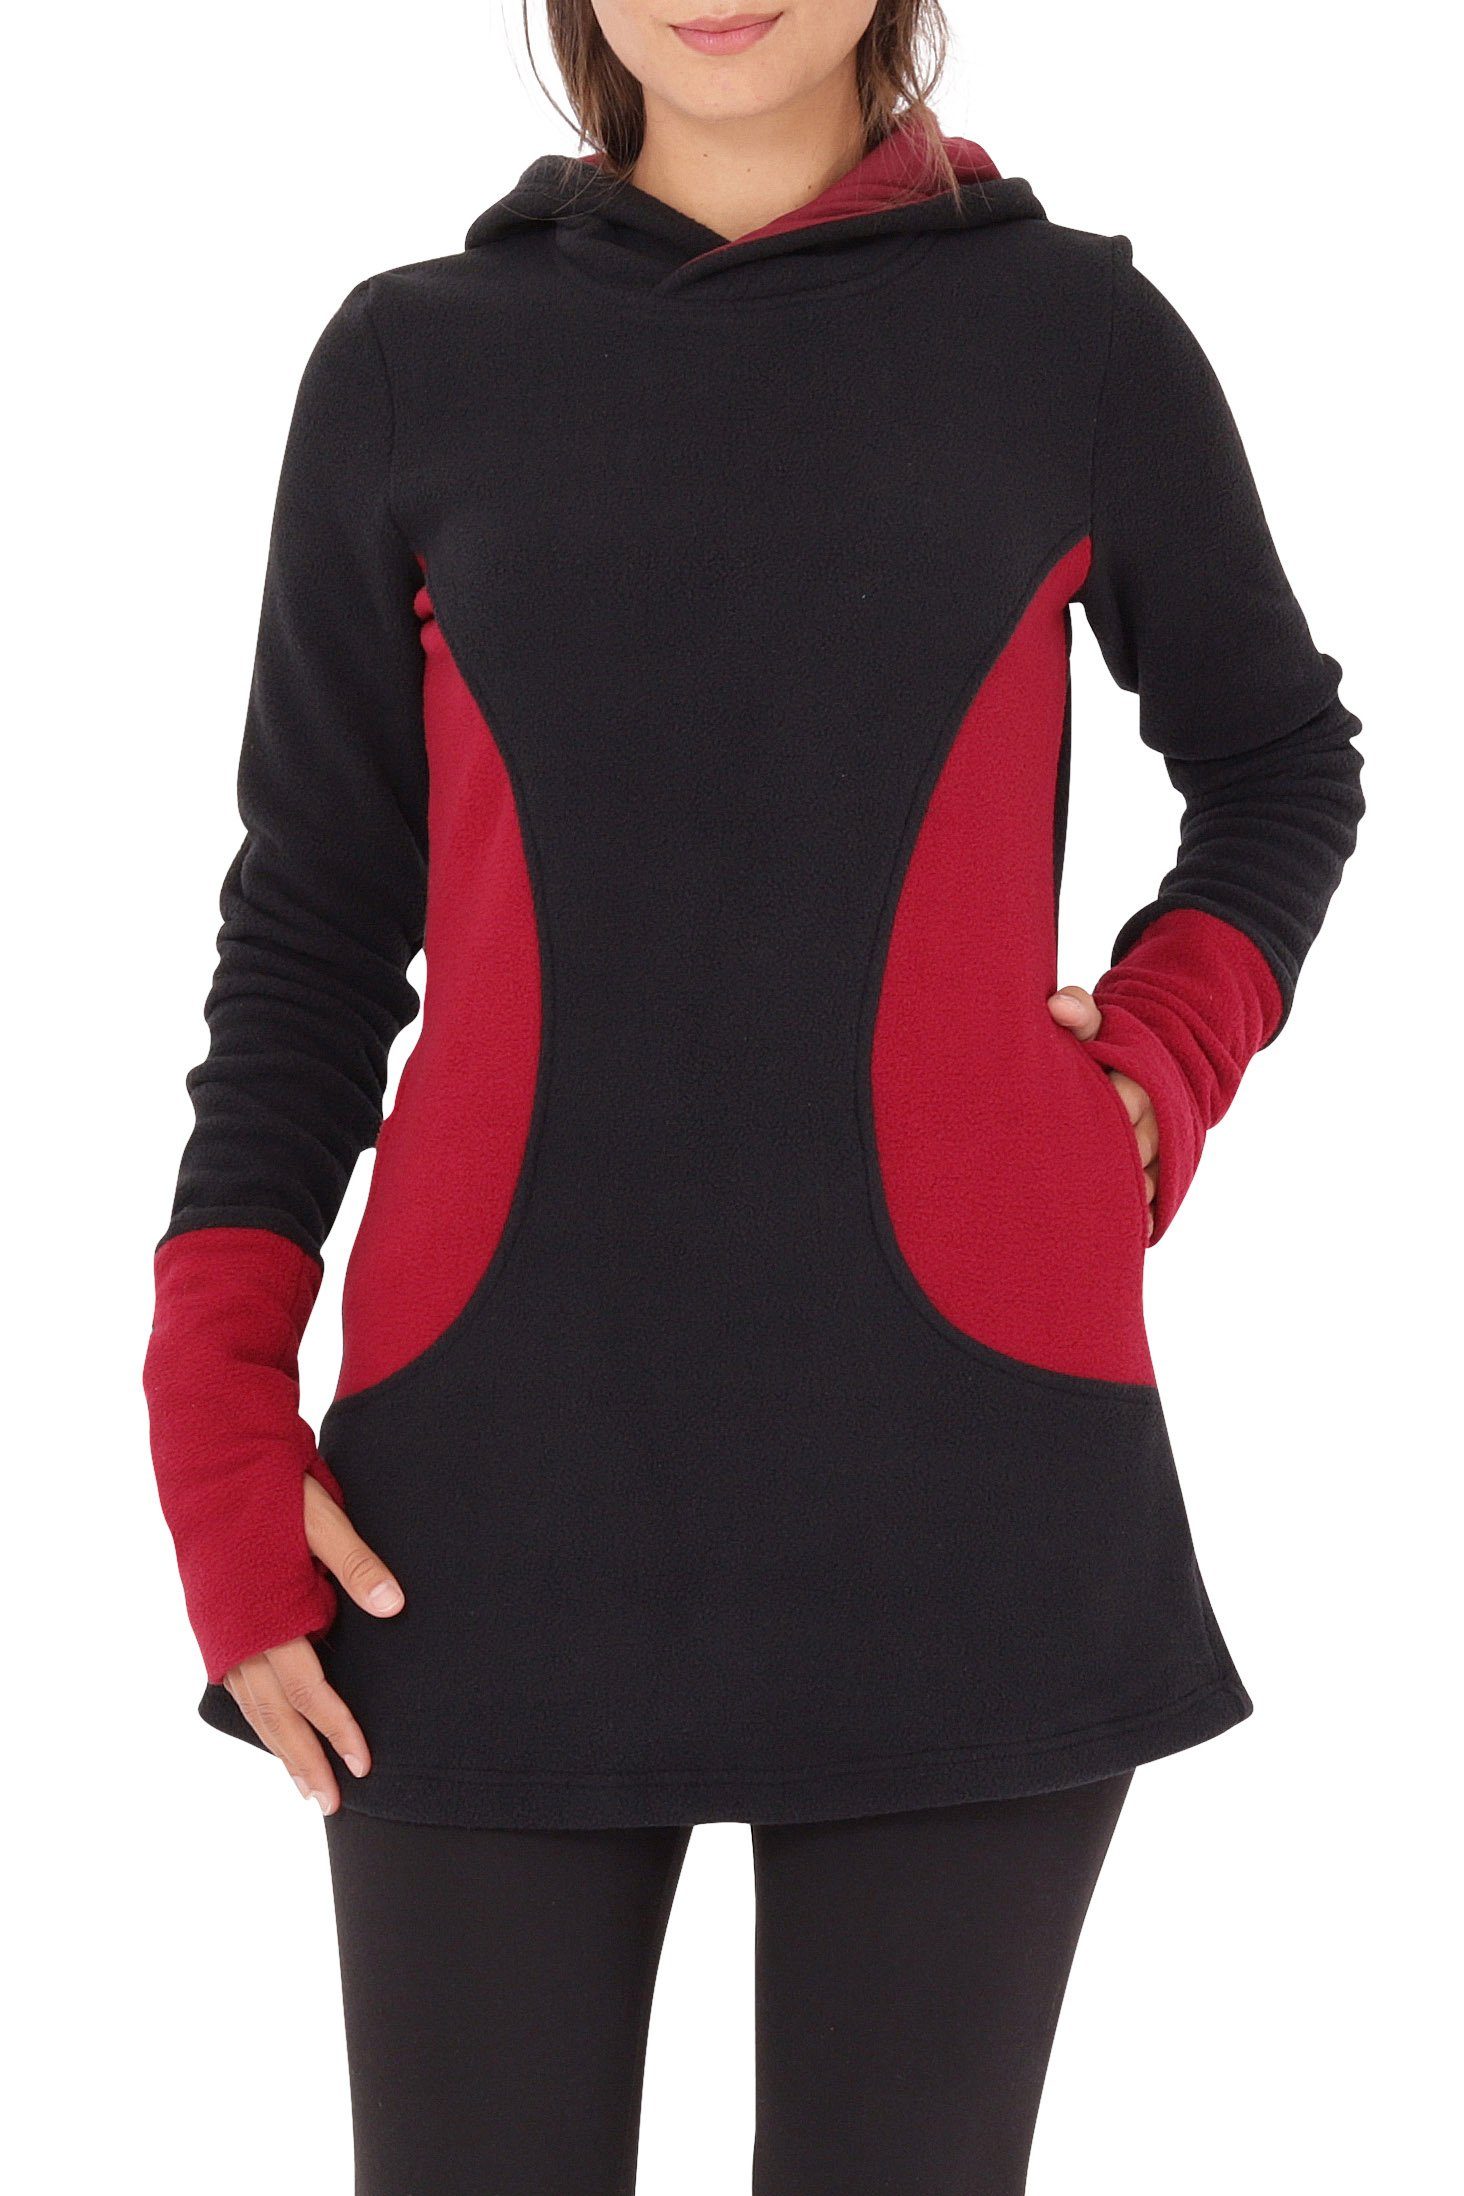 PUREWONDER Kapuzenpullover Fleece Kleid und Pullover dr12 mit Kapuze und Taschen Rot